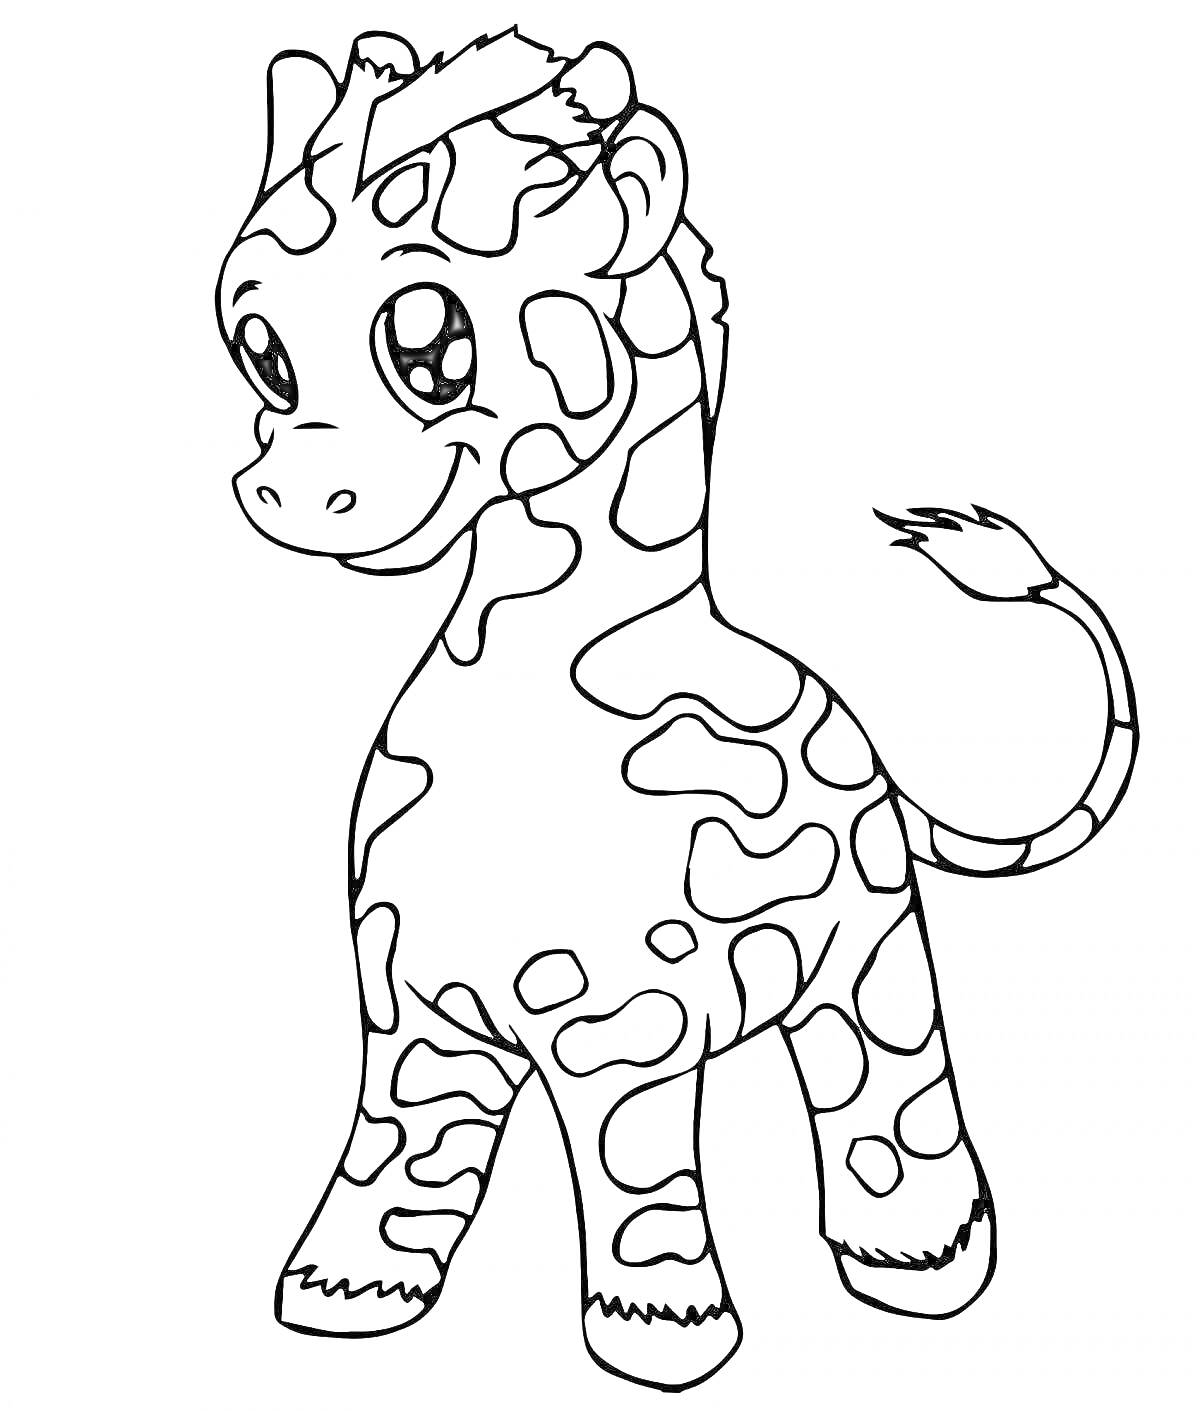 Раскраска Жираф с большими глазами и пятнисто-окрашенным телом